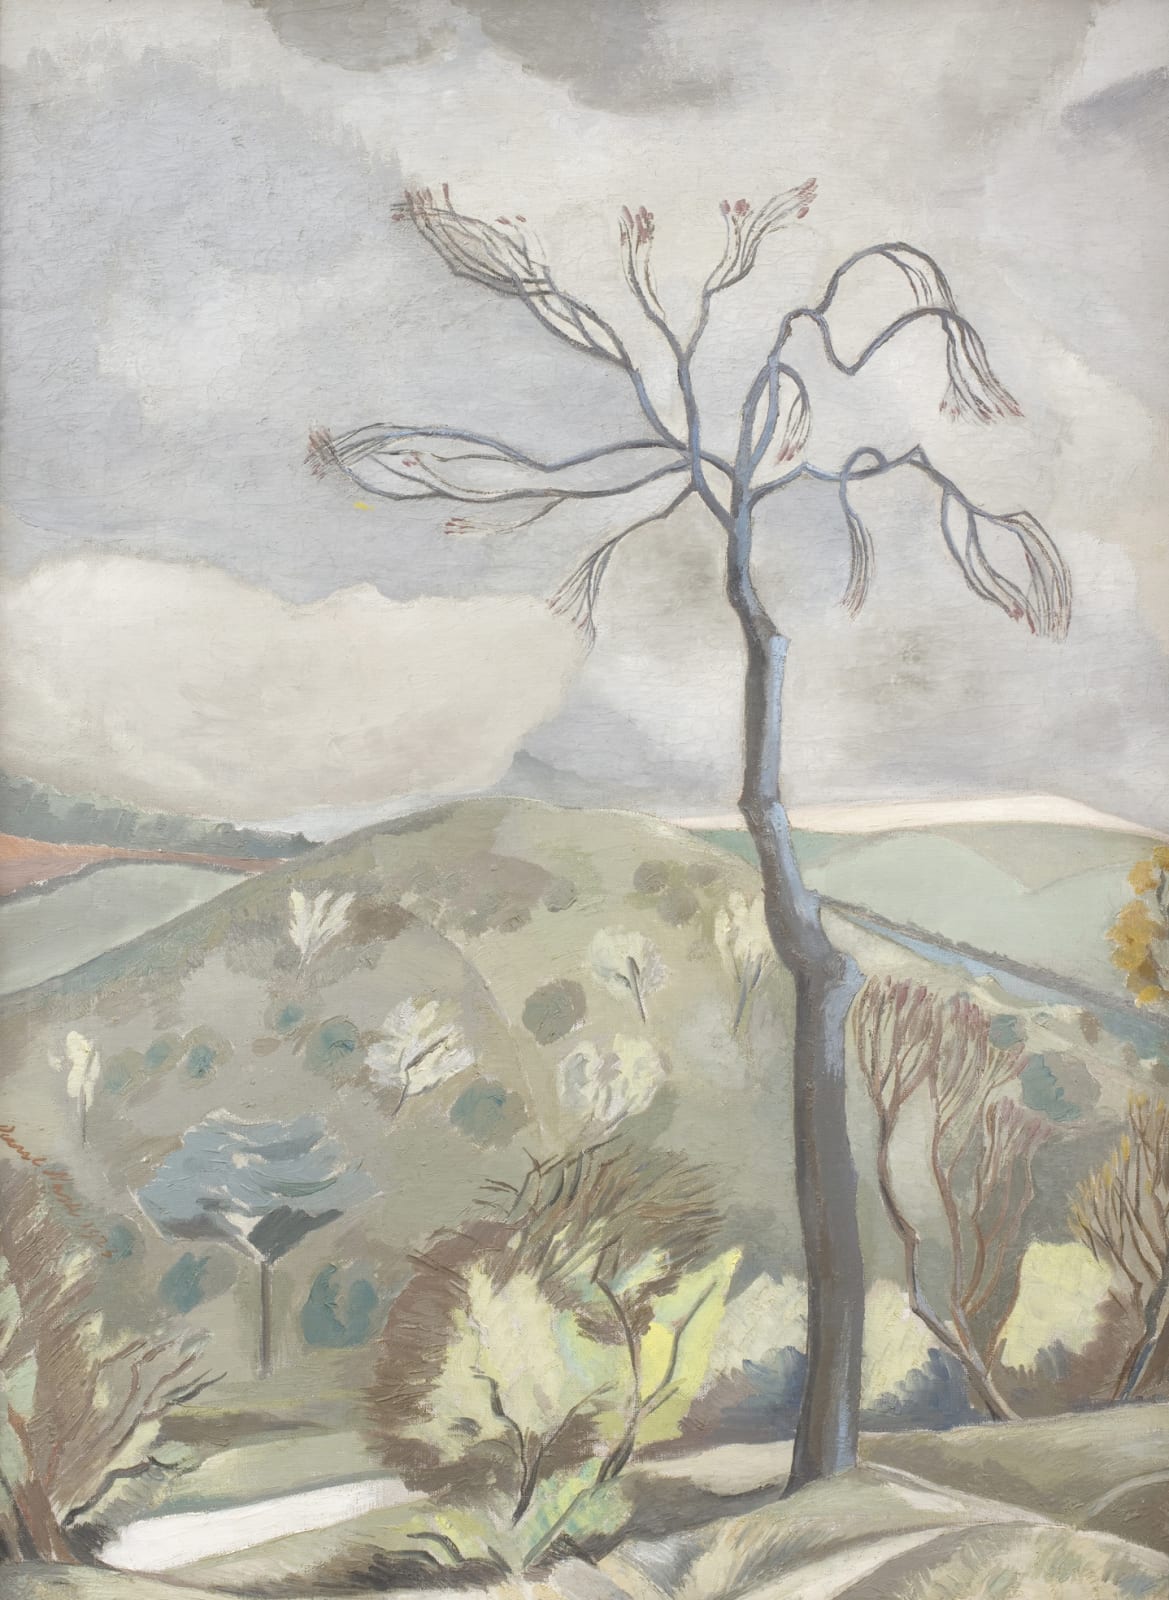 Paul Nash, Autumn Landscape, 1923